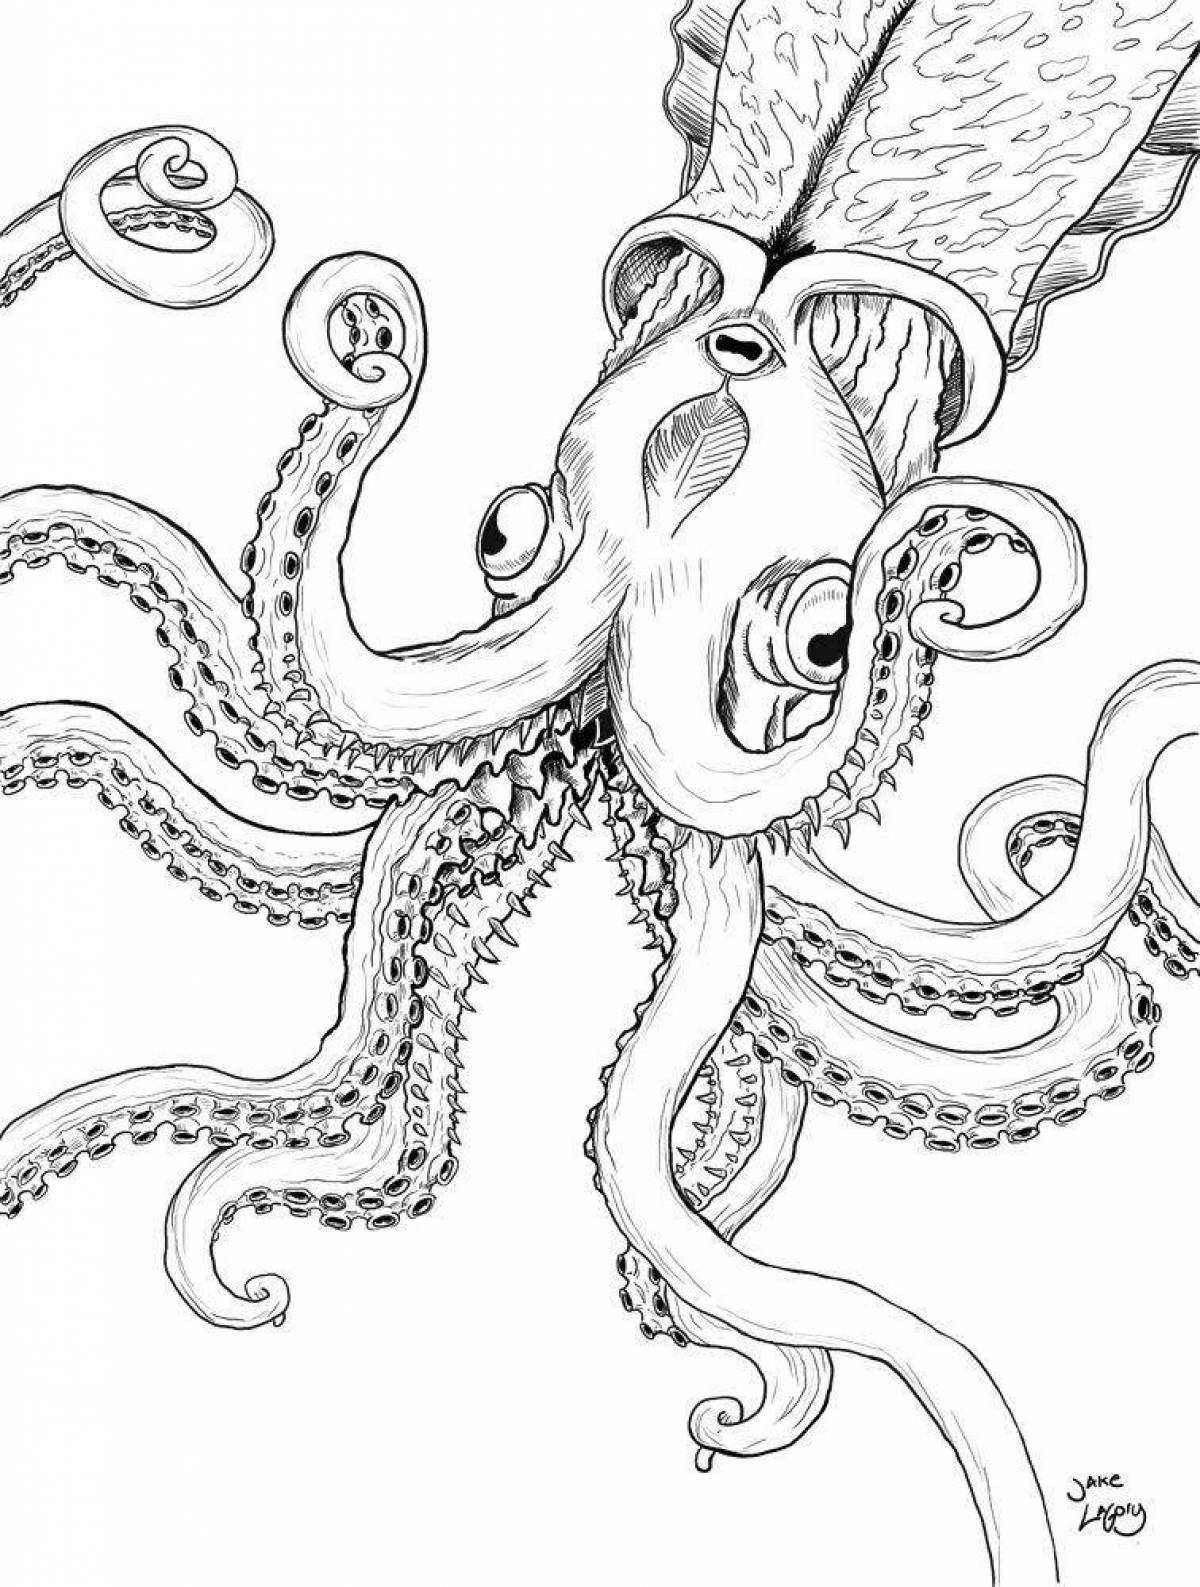 Royal kraken coloring page